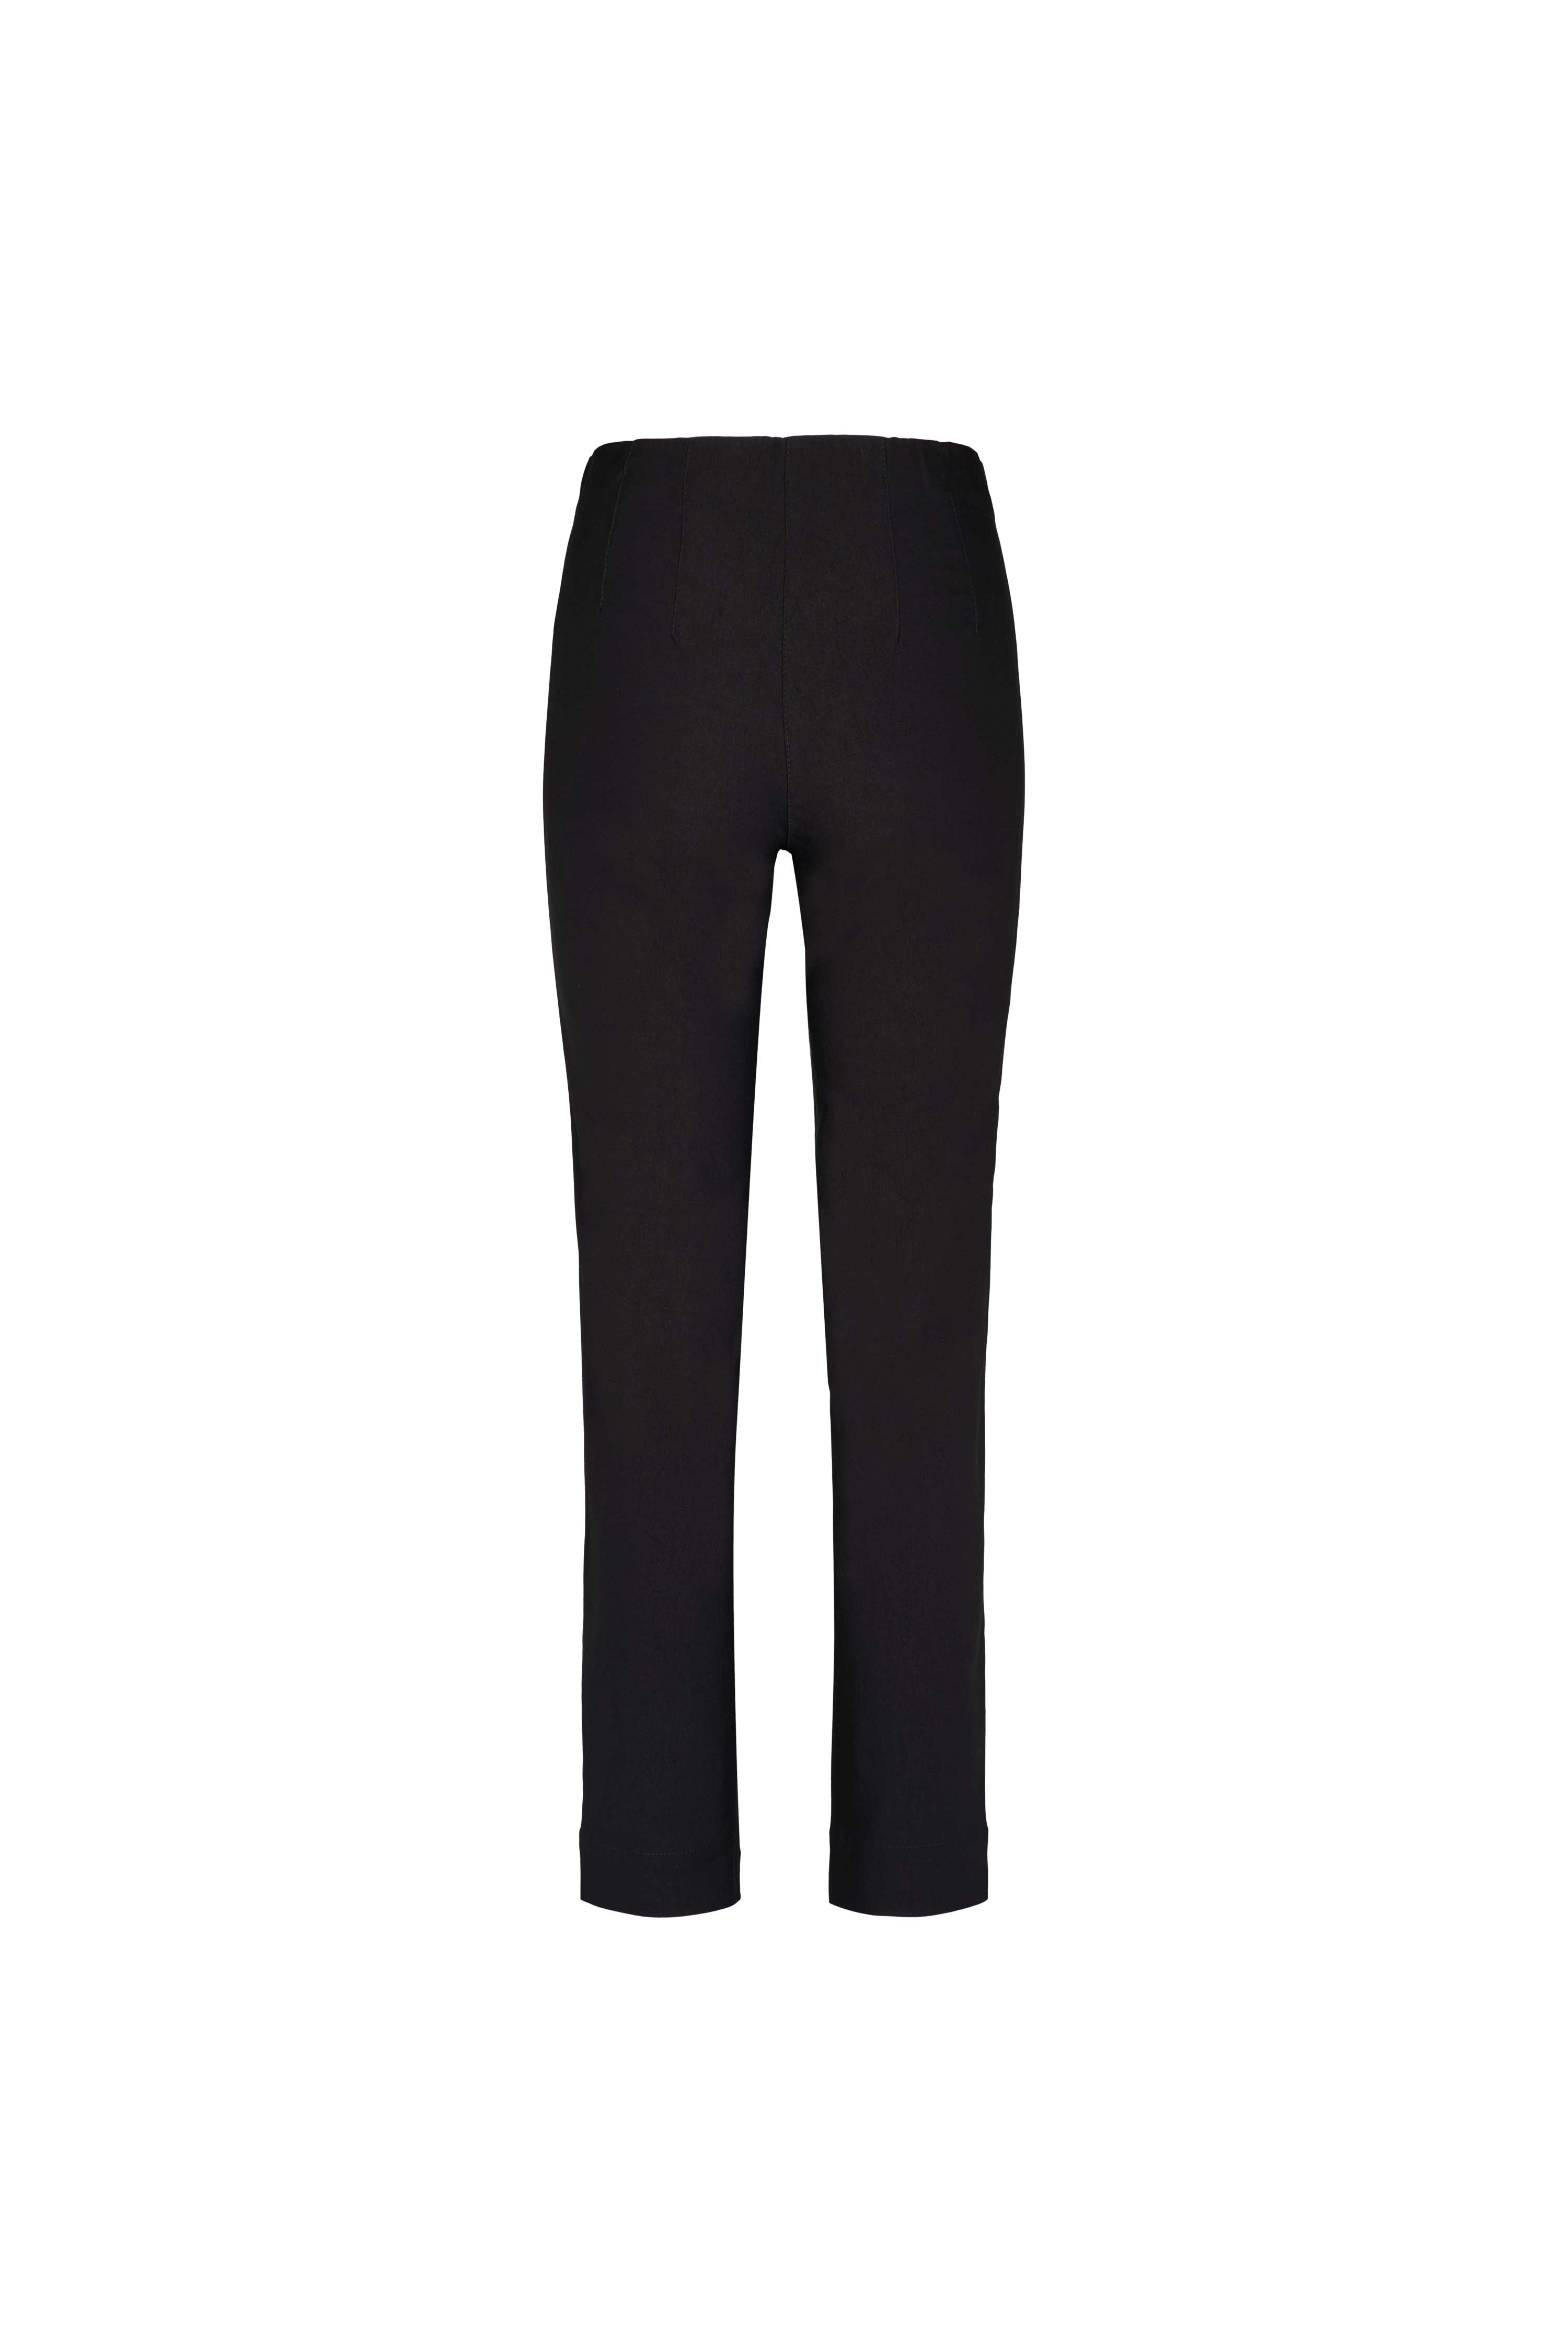 LAURIE Betty Regular - Short Length Trousers REGULAR 99970 Black